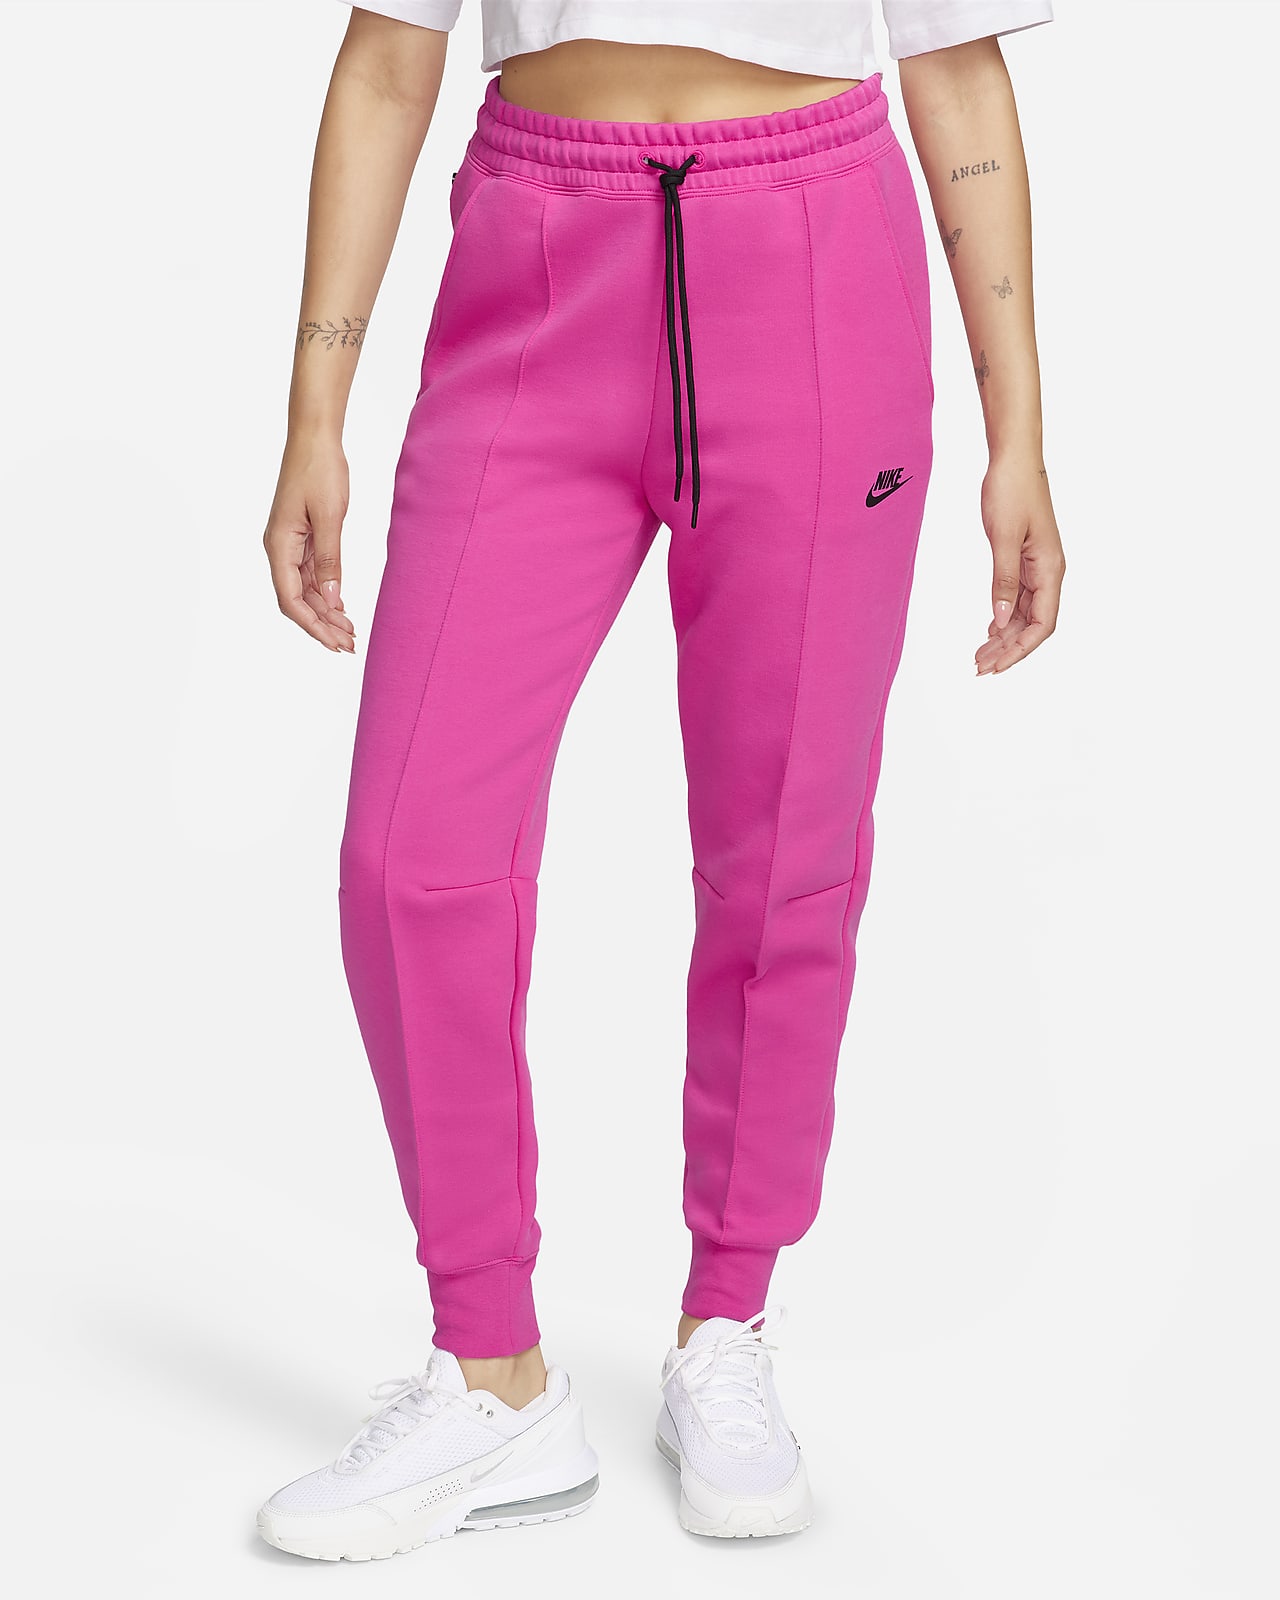 Dámské běžecké kalhoty Nike Sportswear Tech Fleece se středně vysokým pasem